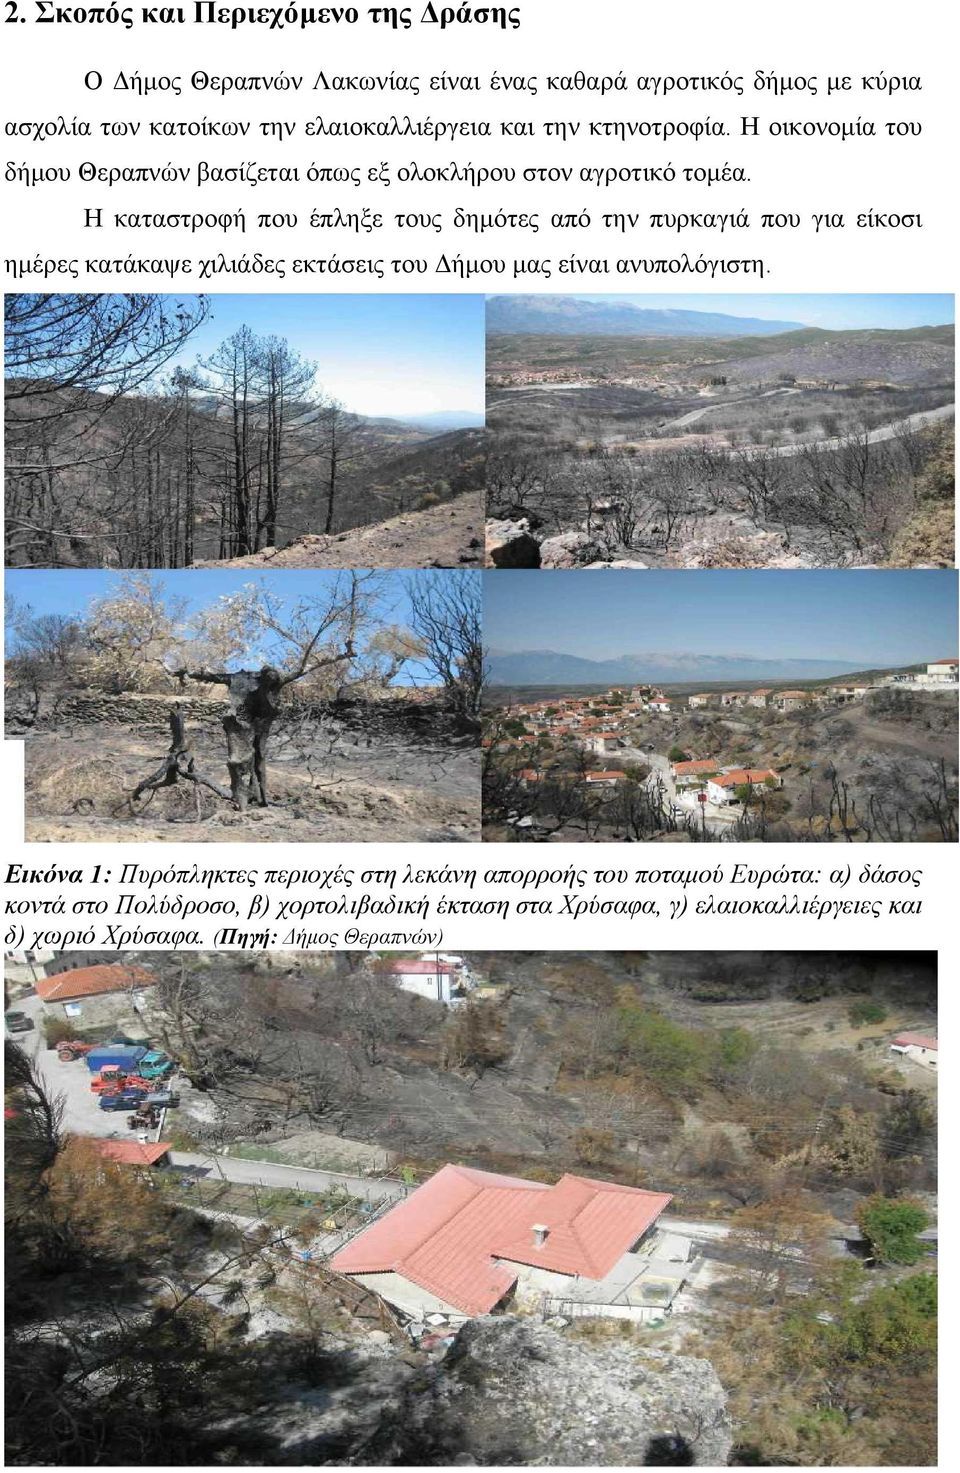 Η καταστροφή που έπληξε τους δημότες από την πυρκαγιά που για είκοσι ημέρες κατάκαψε χιλιάδες εκτάσεις του Δήμου μας είναι ανυπολόγιστη.